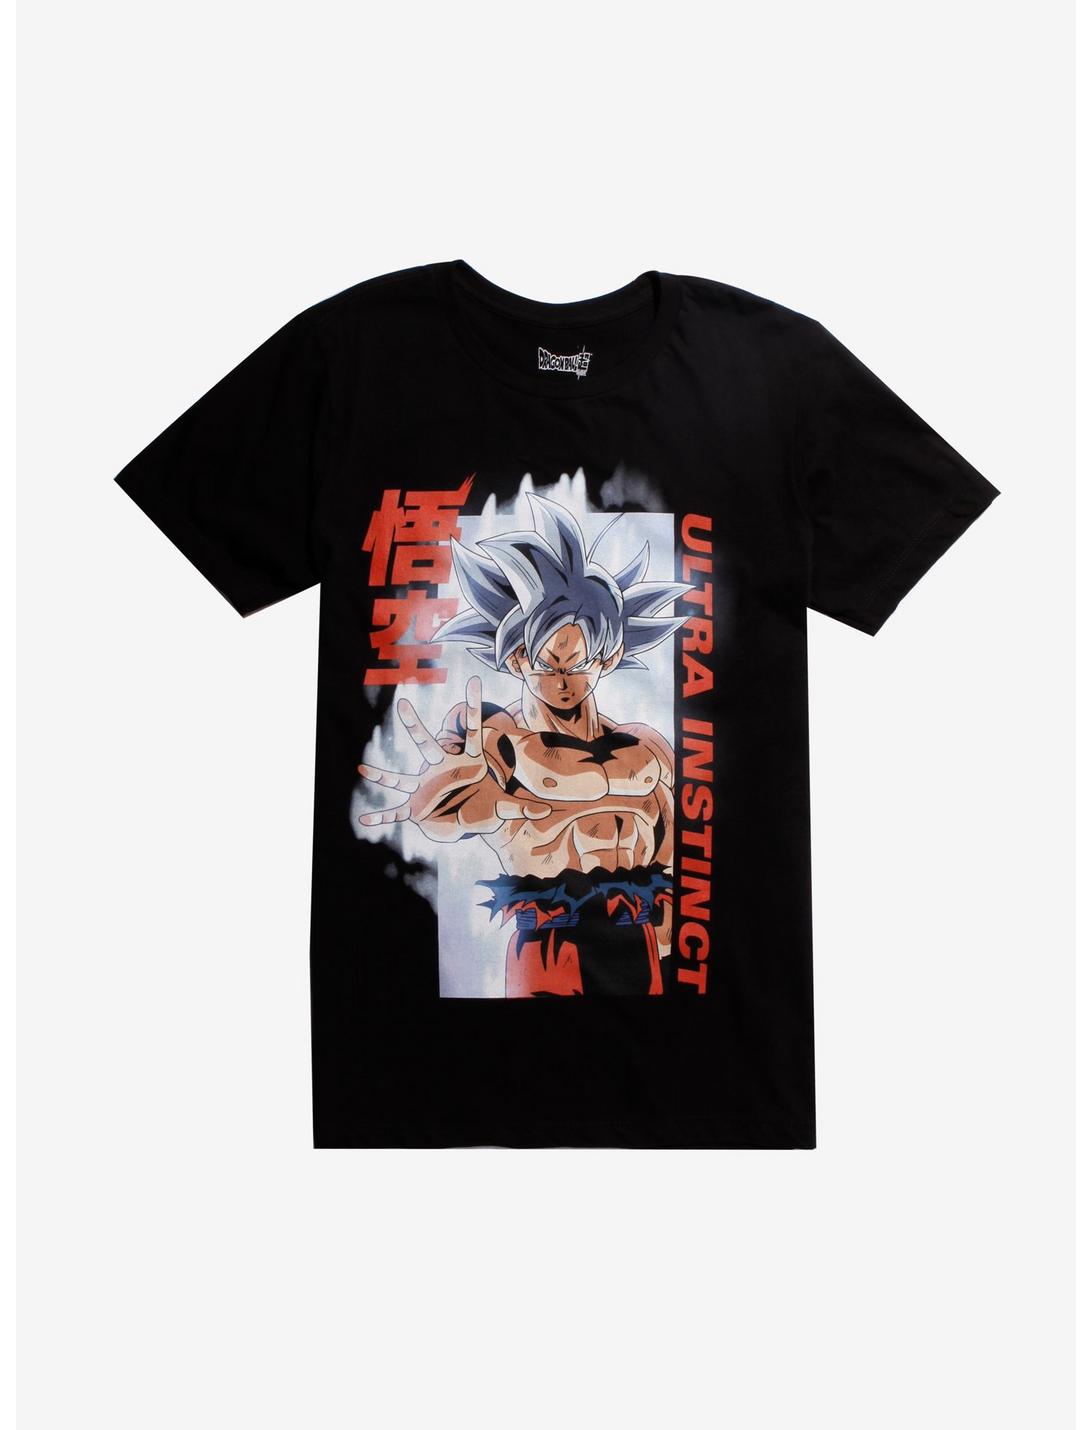 Dragon Ball Super Goku Ultra Instinct T-Shirt Hot Topic Exclusive, BLACK, hi-res